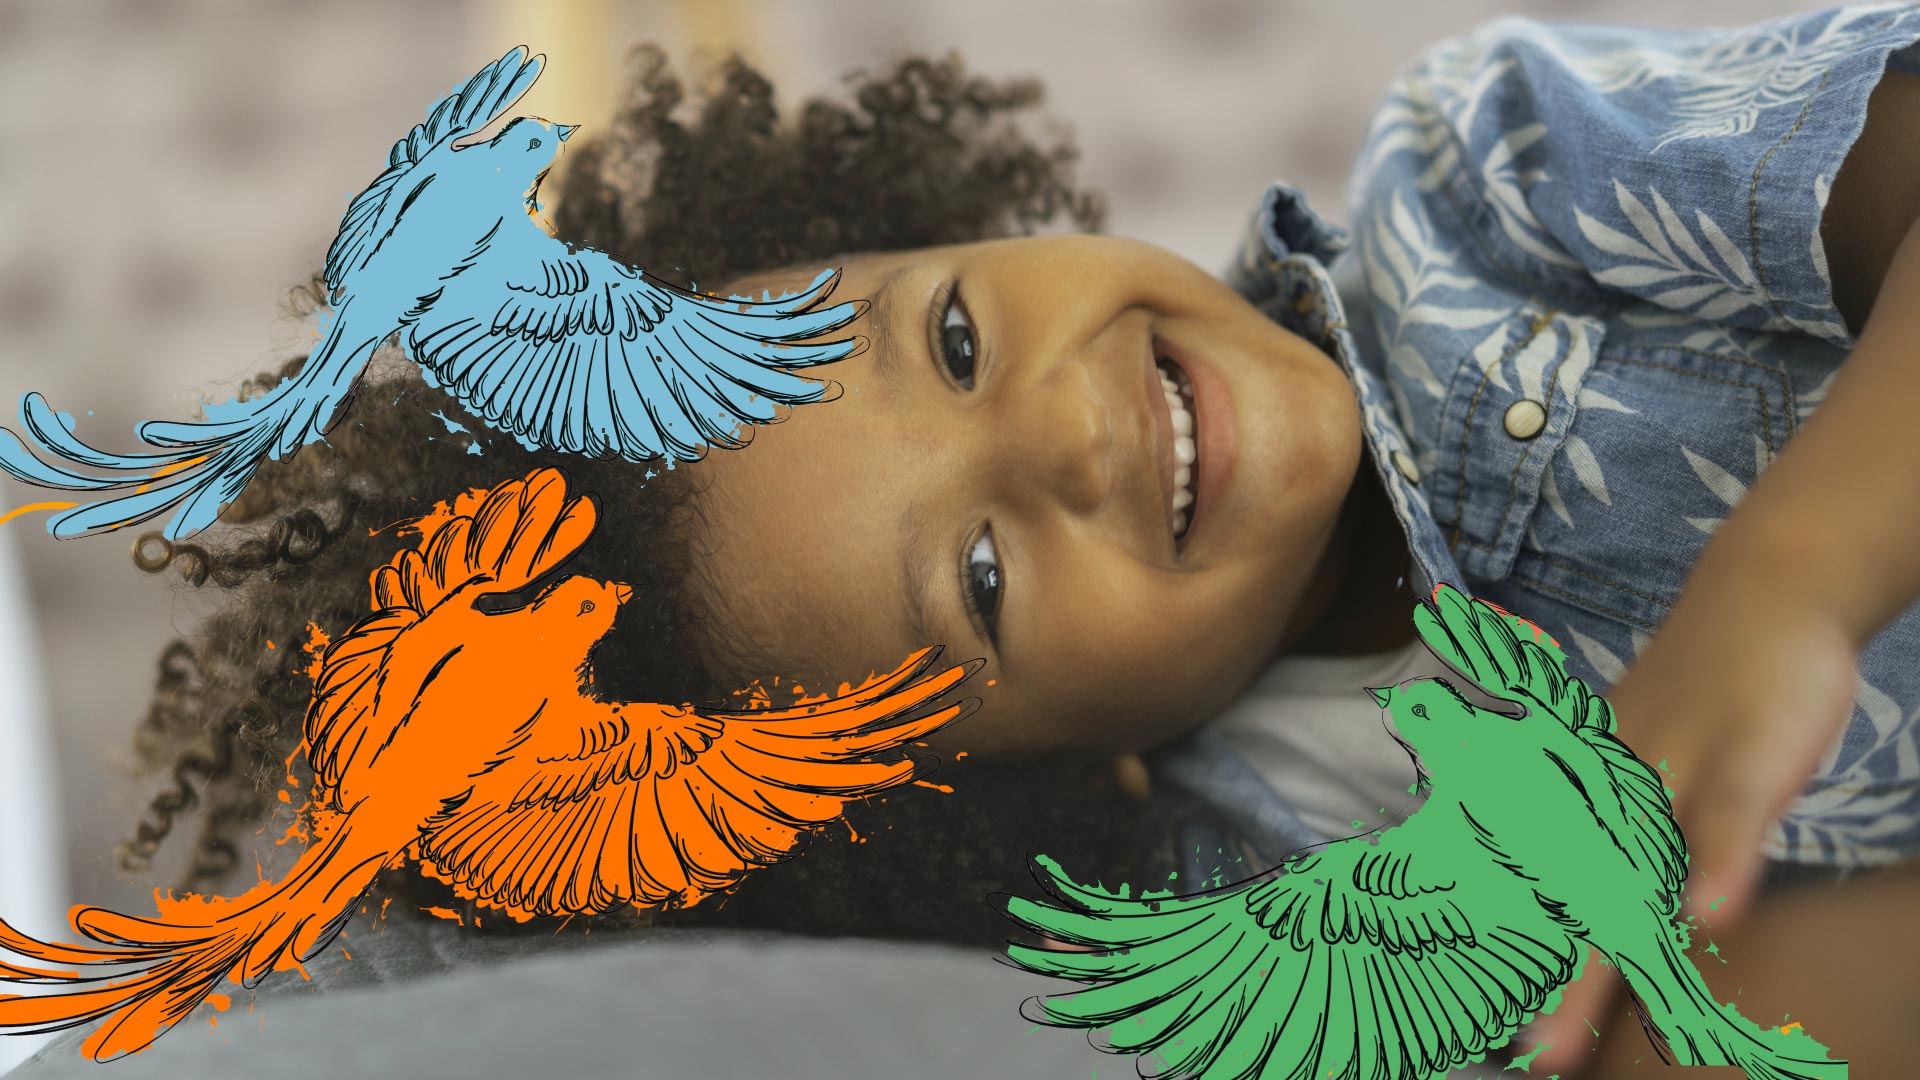 Imagem de um menino negro deitado, ele aparece envolvido pela ilustração de três passarinhos coloridos.